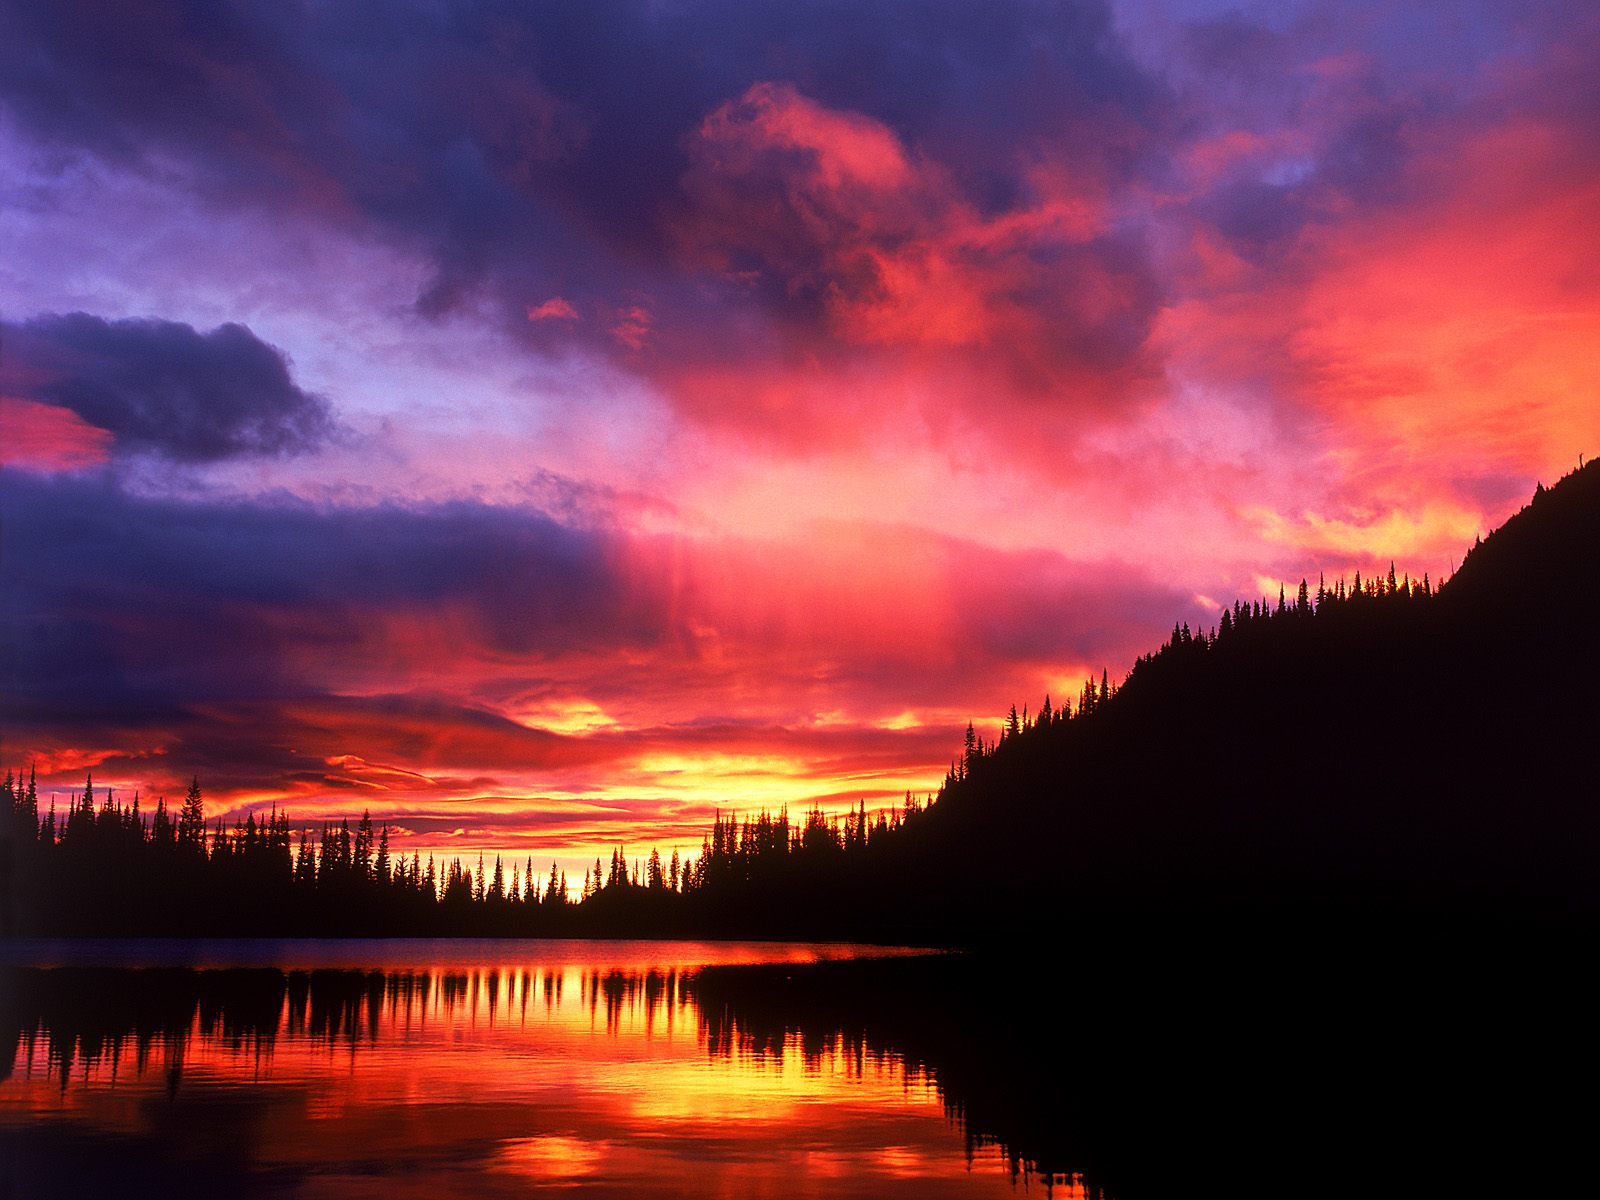 Reflection Lake at Sunrise, Mount Rainier National Park, Washington